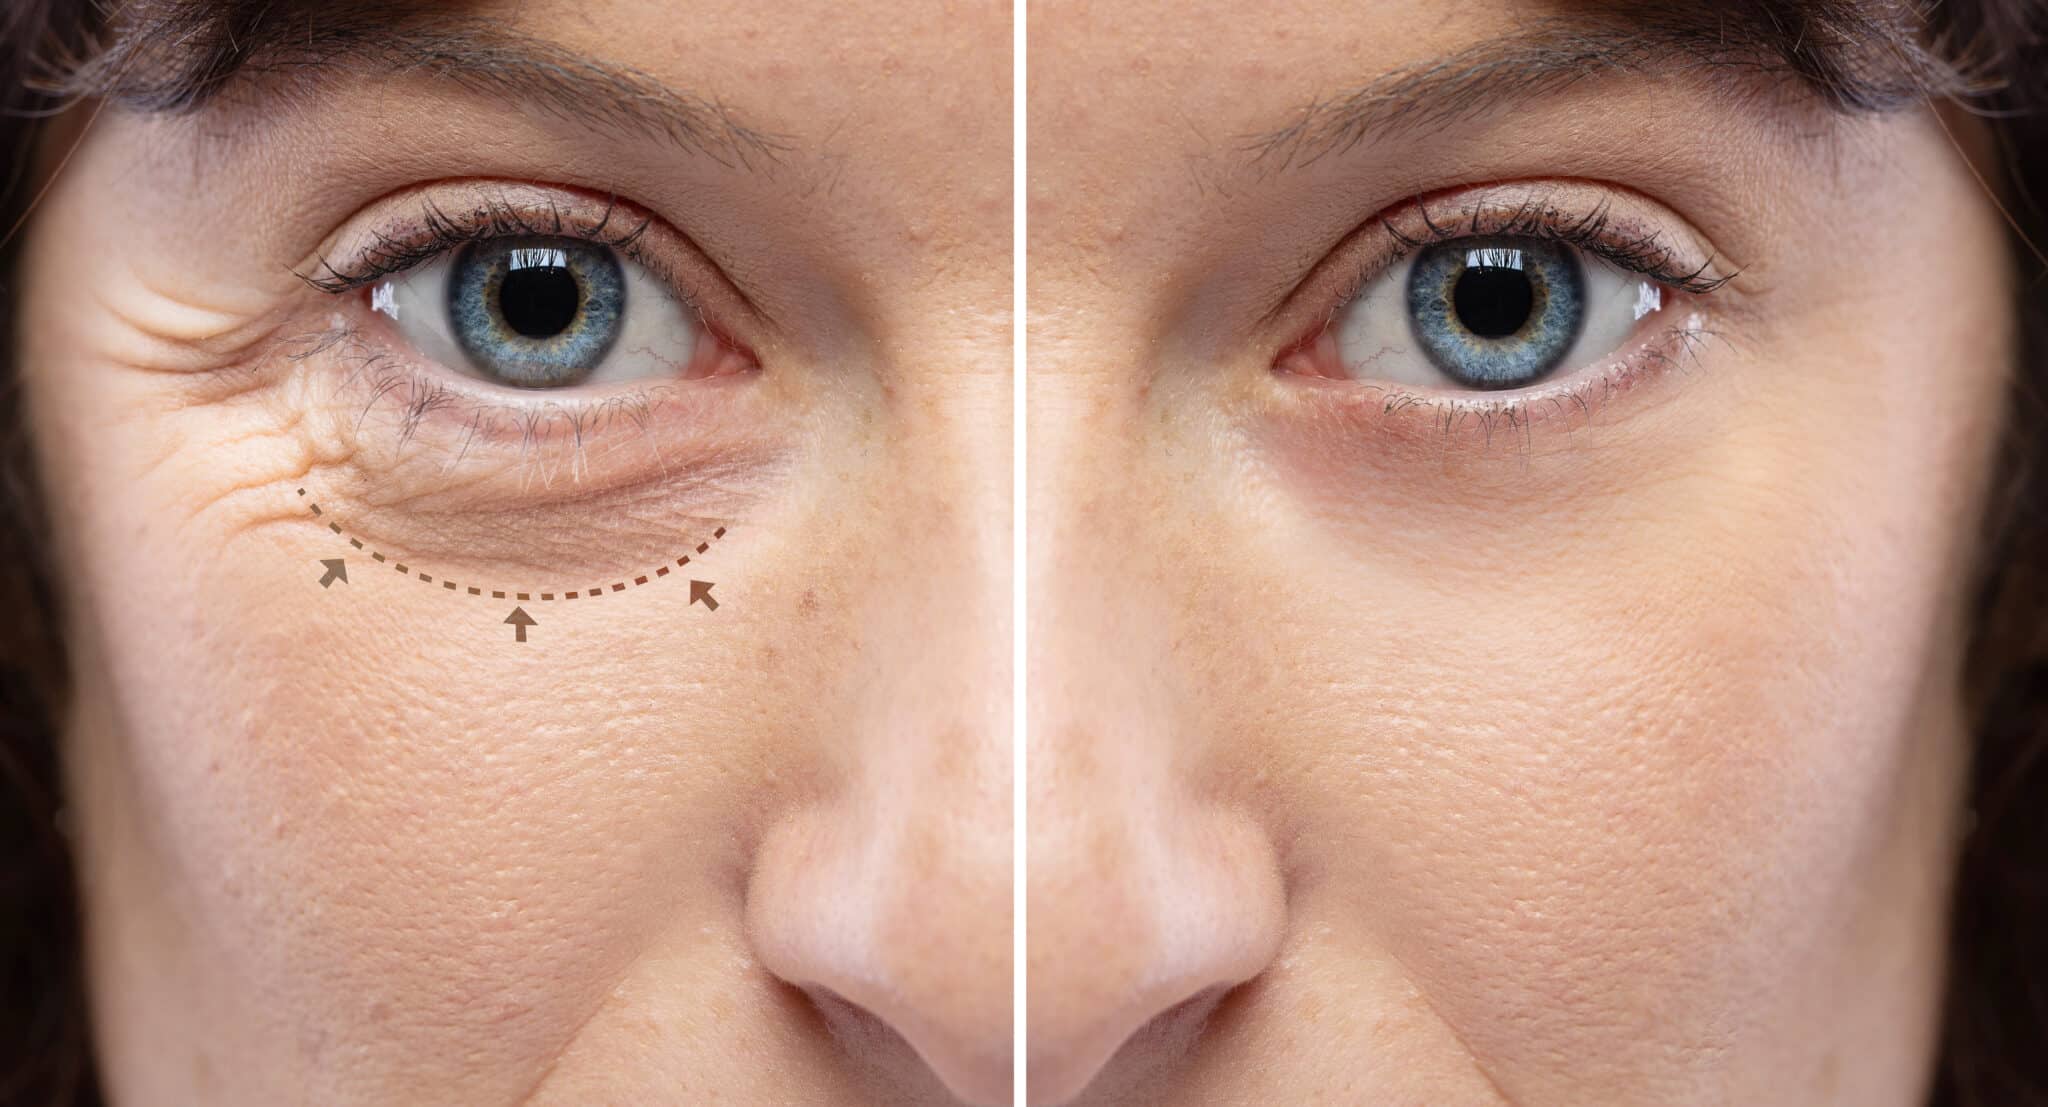 Les yeux d'une femme avant et après une intervention chirurgicale.